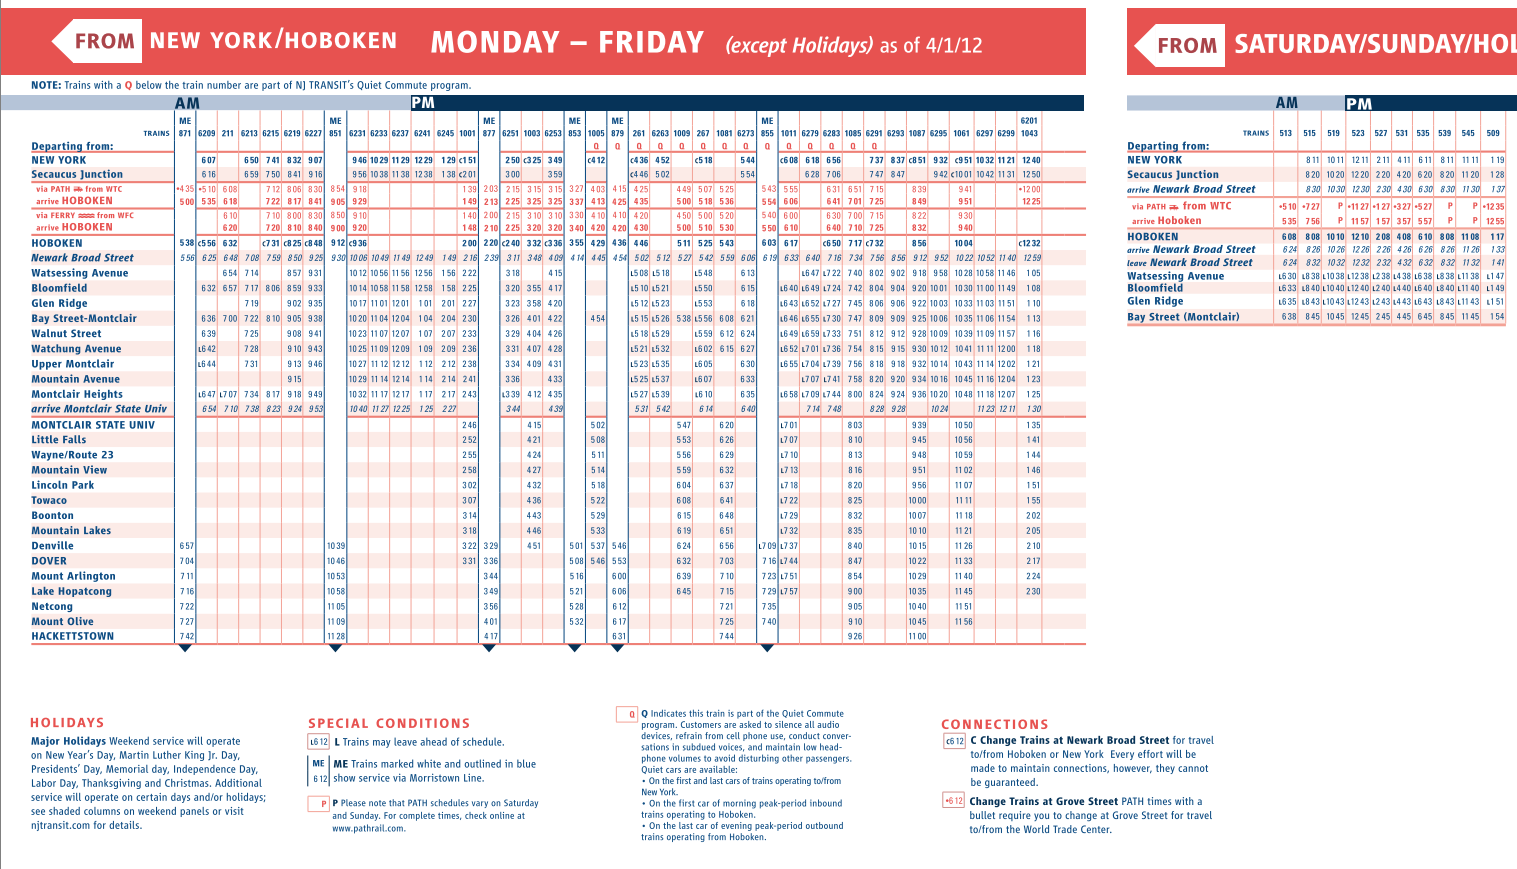 nj transit 163 bus schedule pdf images